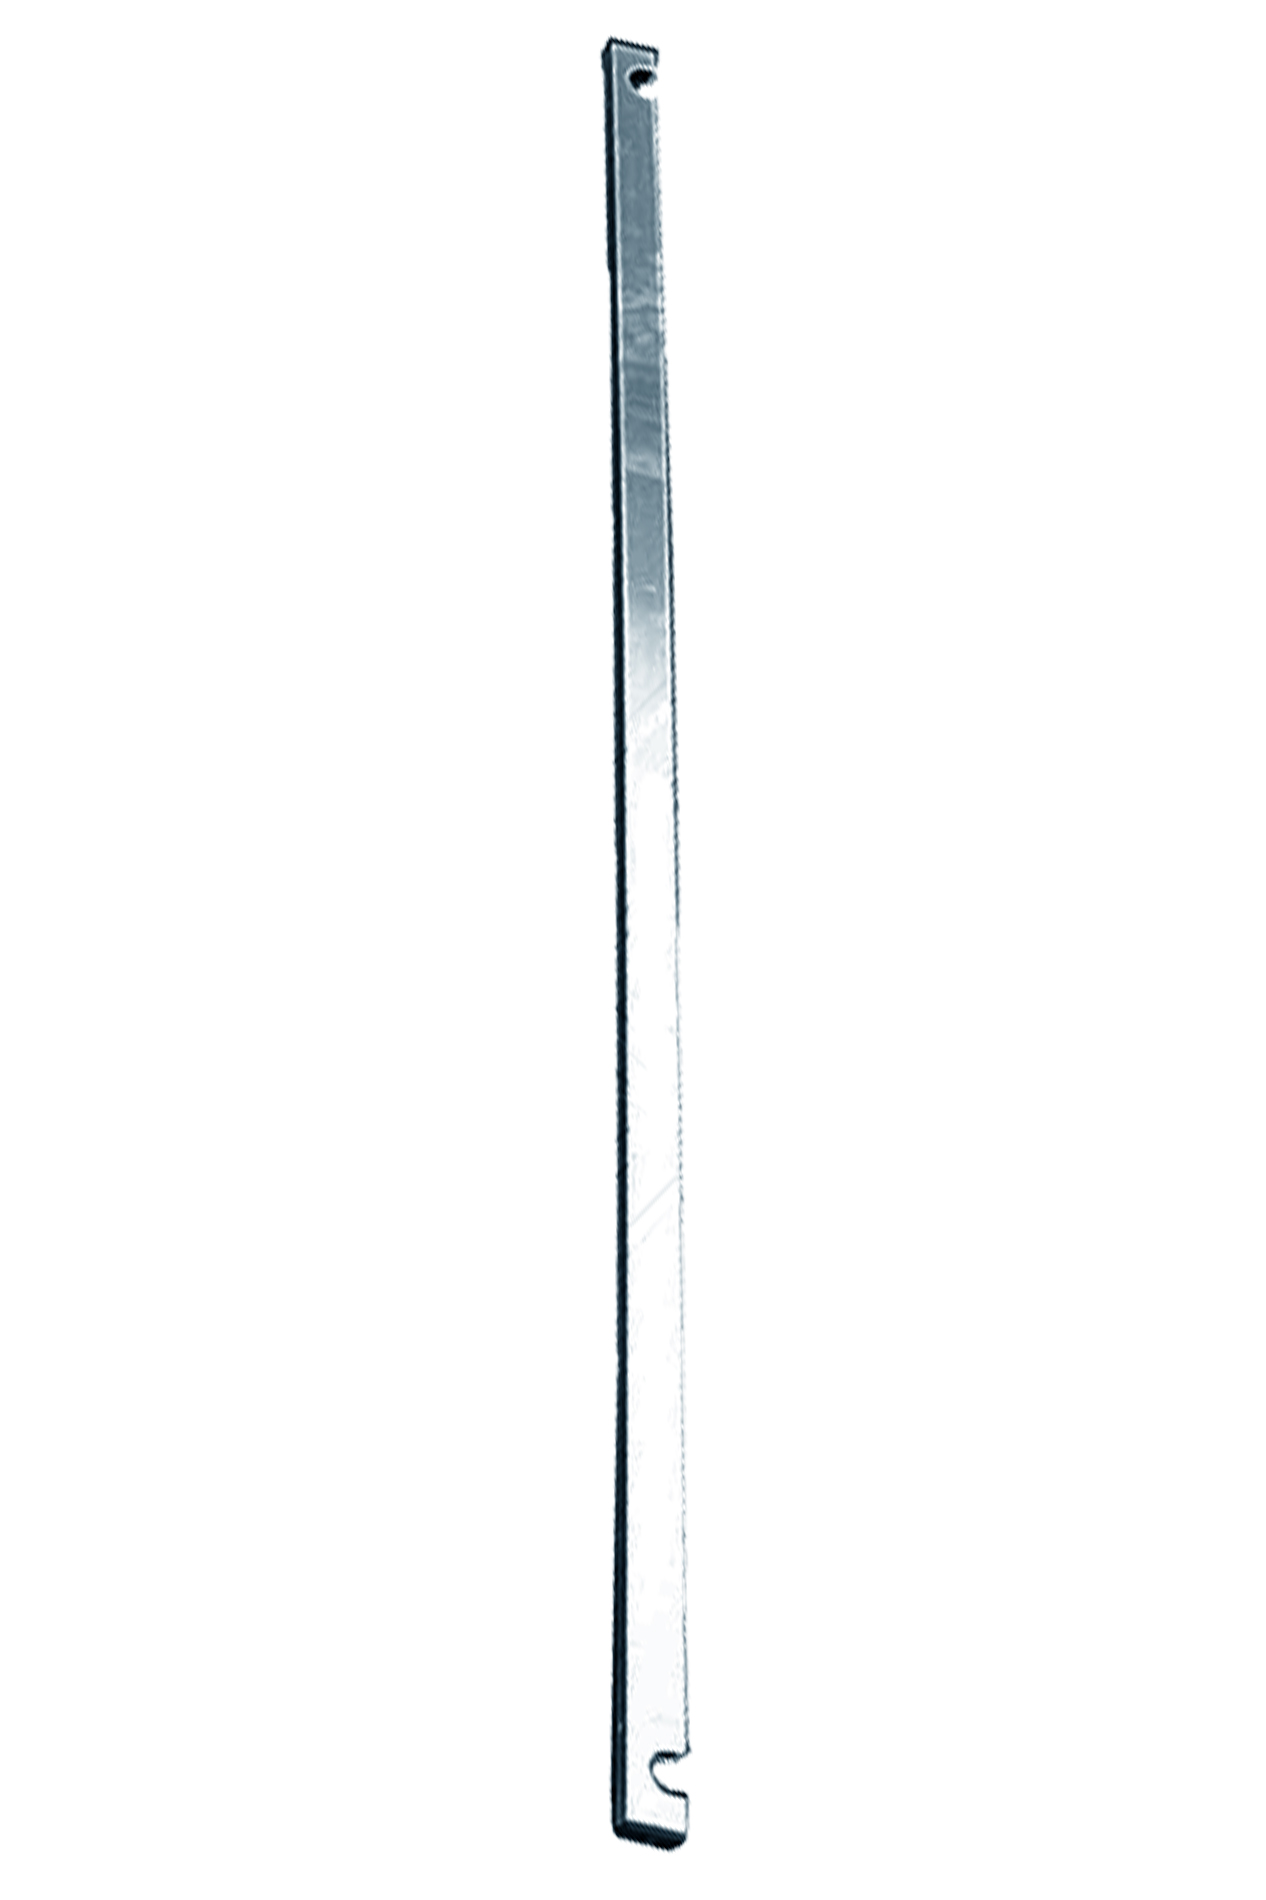 Дополнительное изображение STABILO 100-3 Передвижные подмости, рабочая высота 14,3 м, размер площадки (3.0x0.75 м)